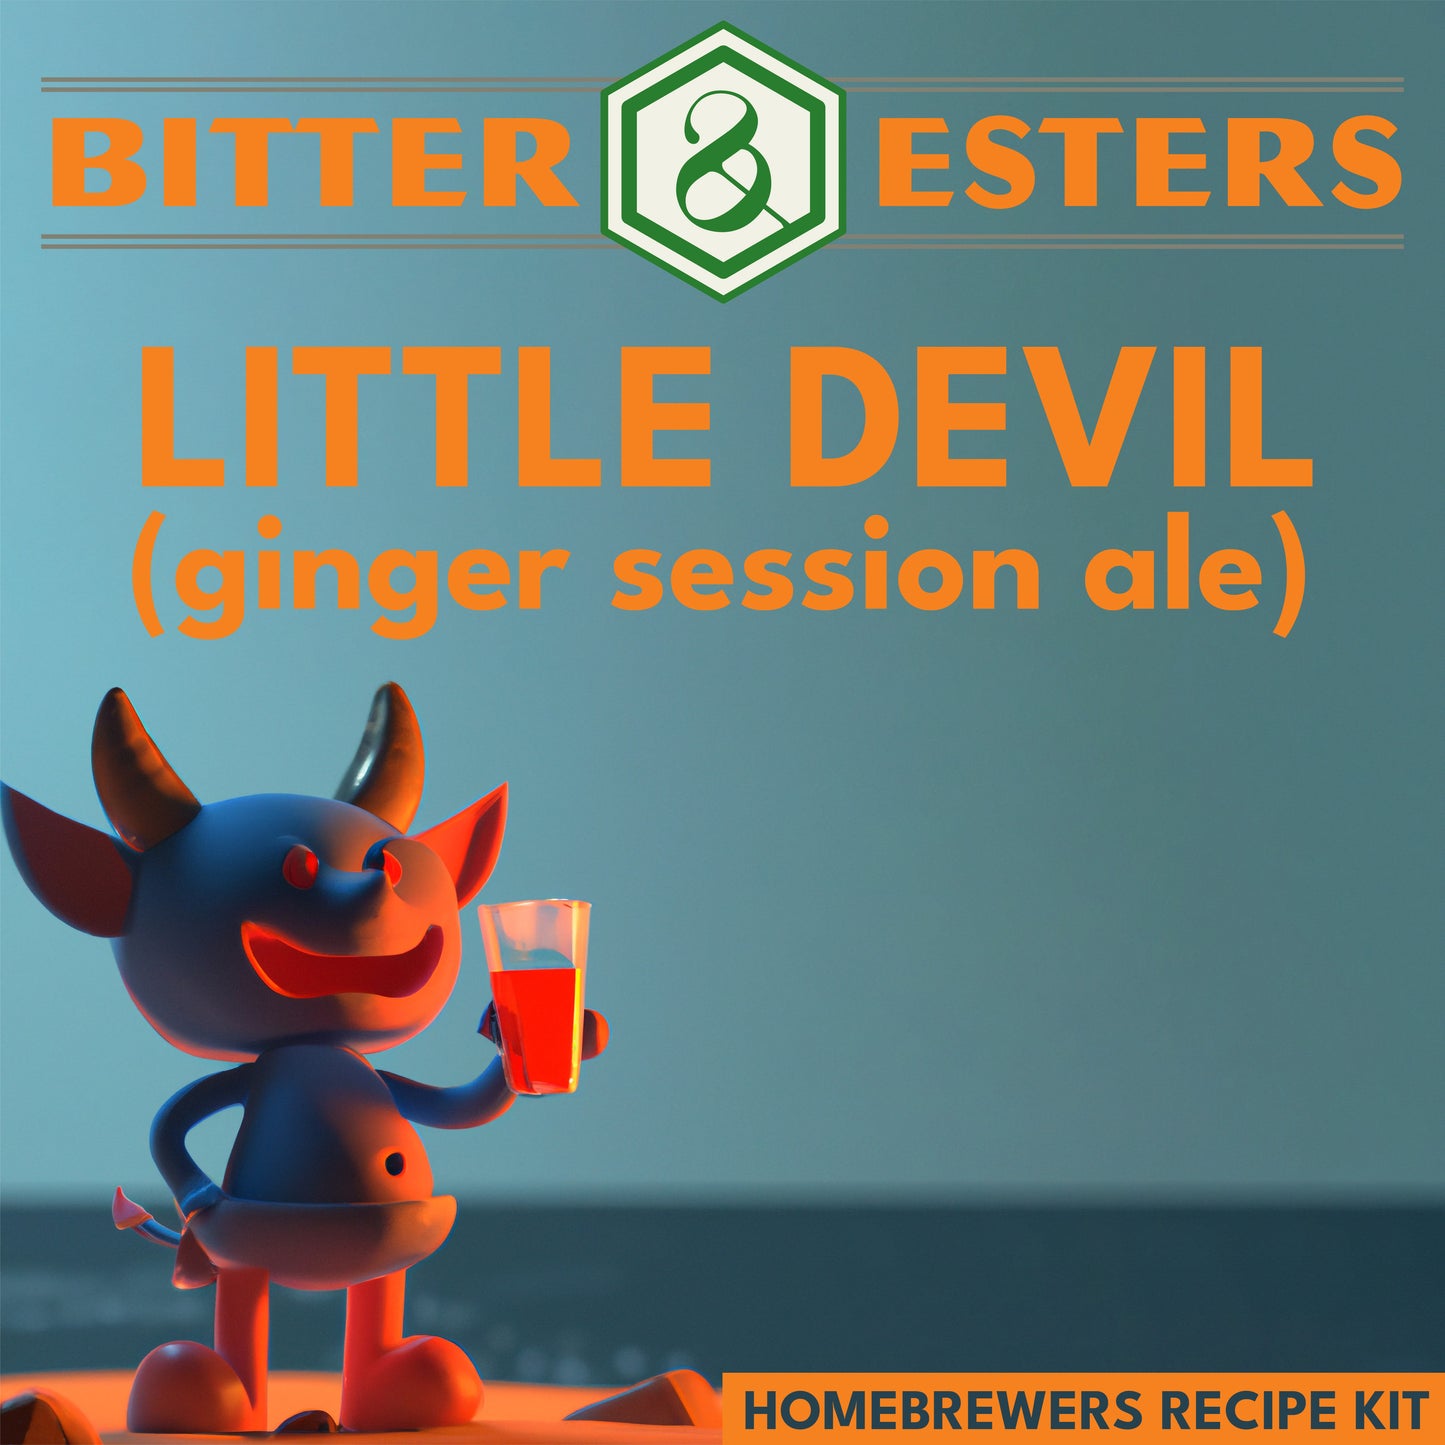 Little Devil Ginger Session Ale - Homebrewers Recipe Kit